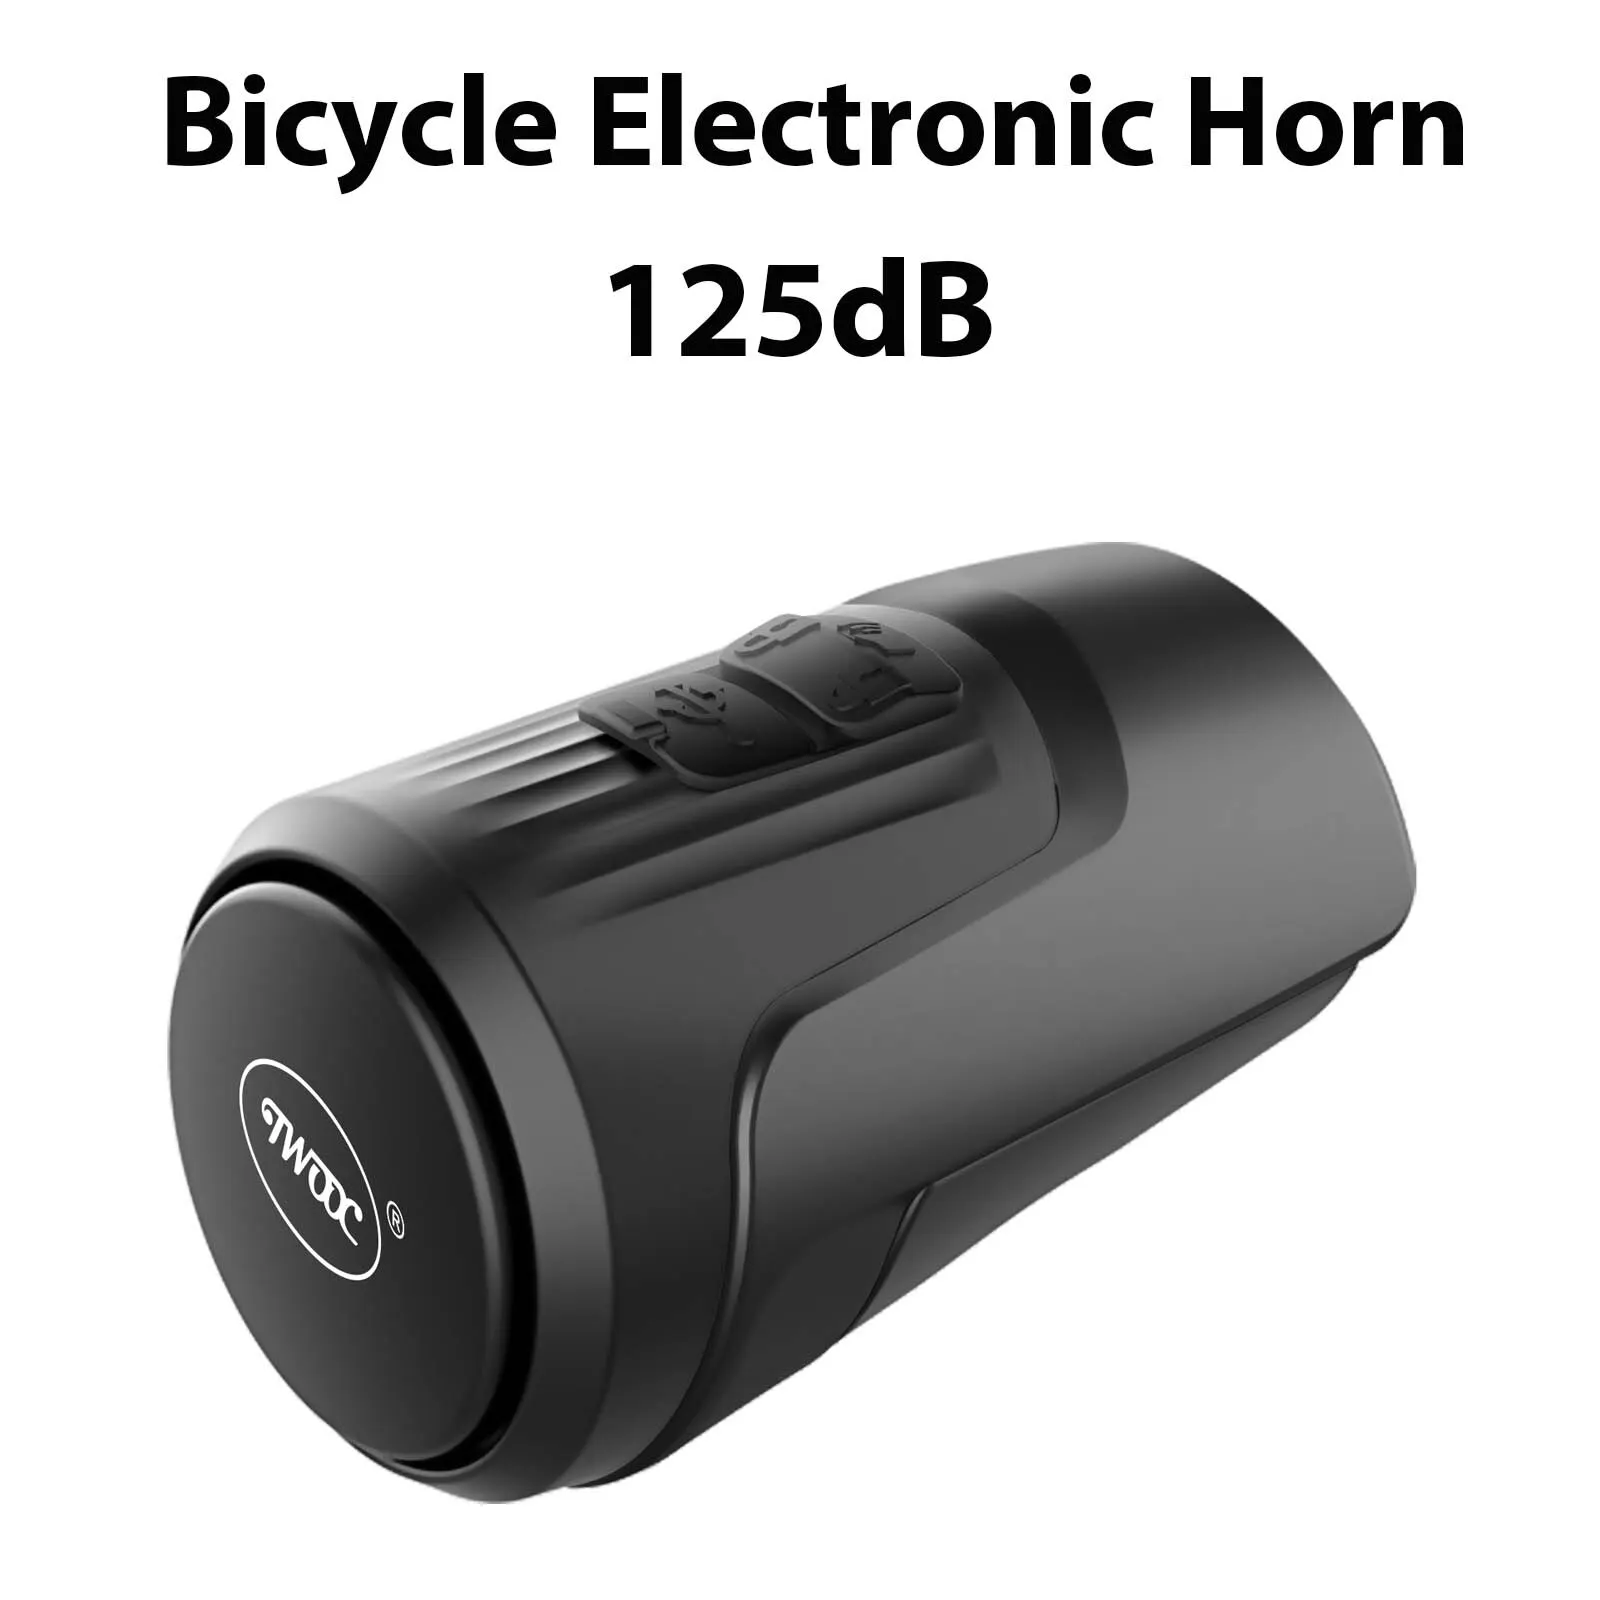 Велосипедный электронный звонок TWOOC 125 дБ, противоугонный звуковой сигнал, USB-аккумулятор, подходит для горных дорожных велосипедов, детских самокатов.